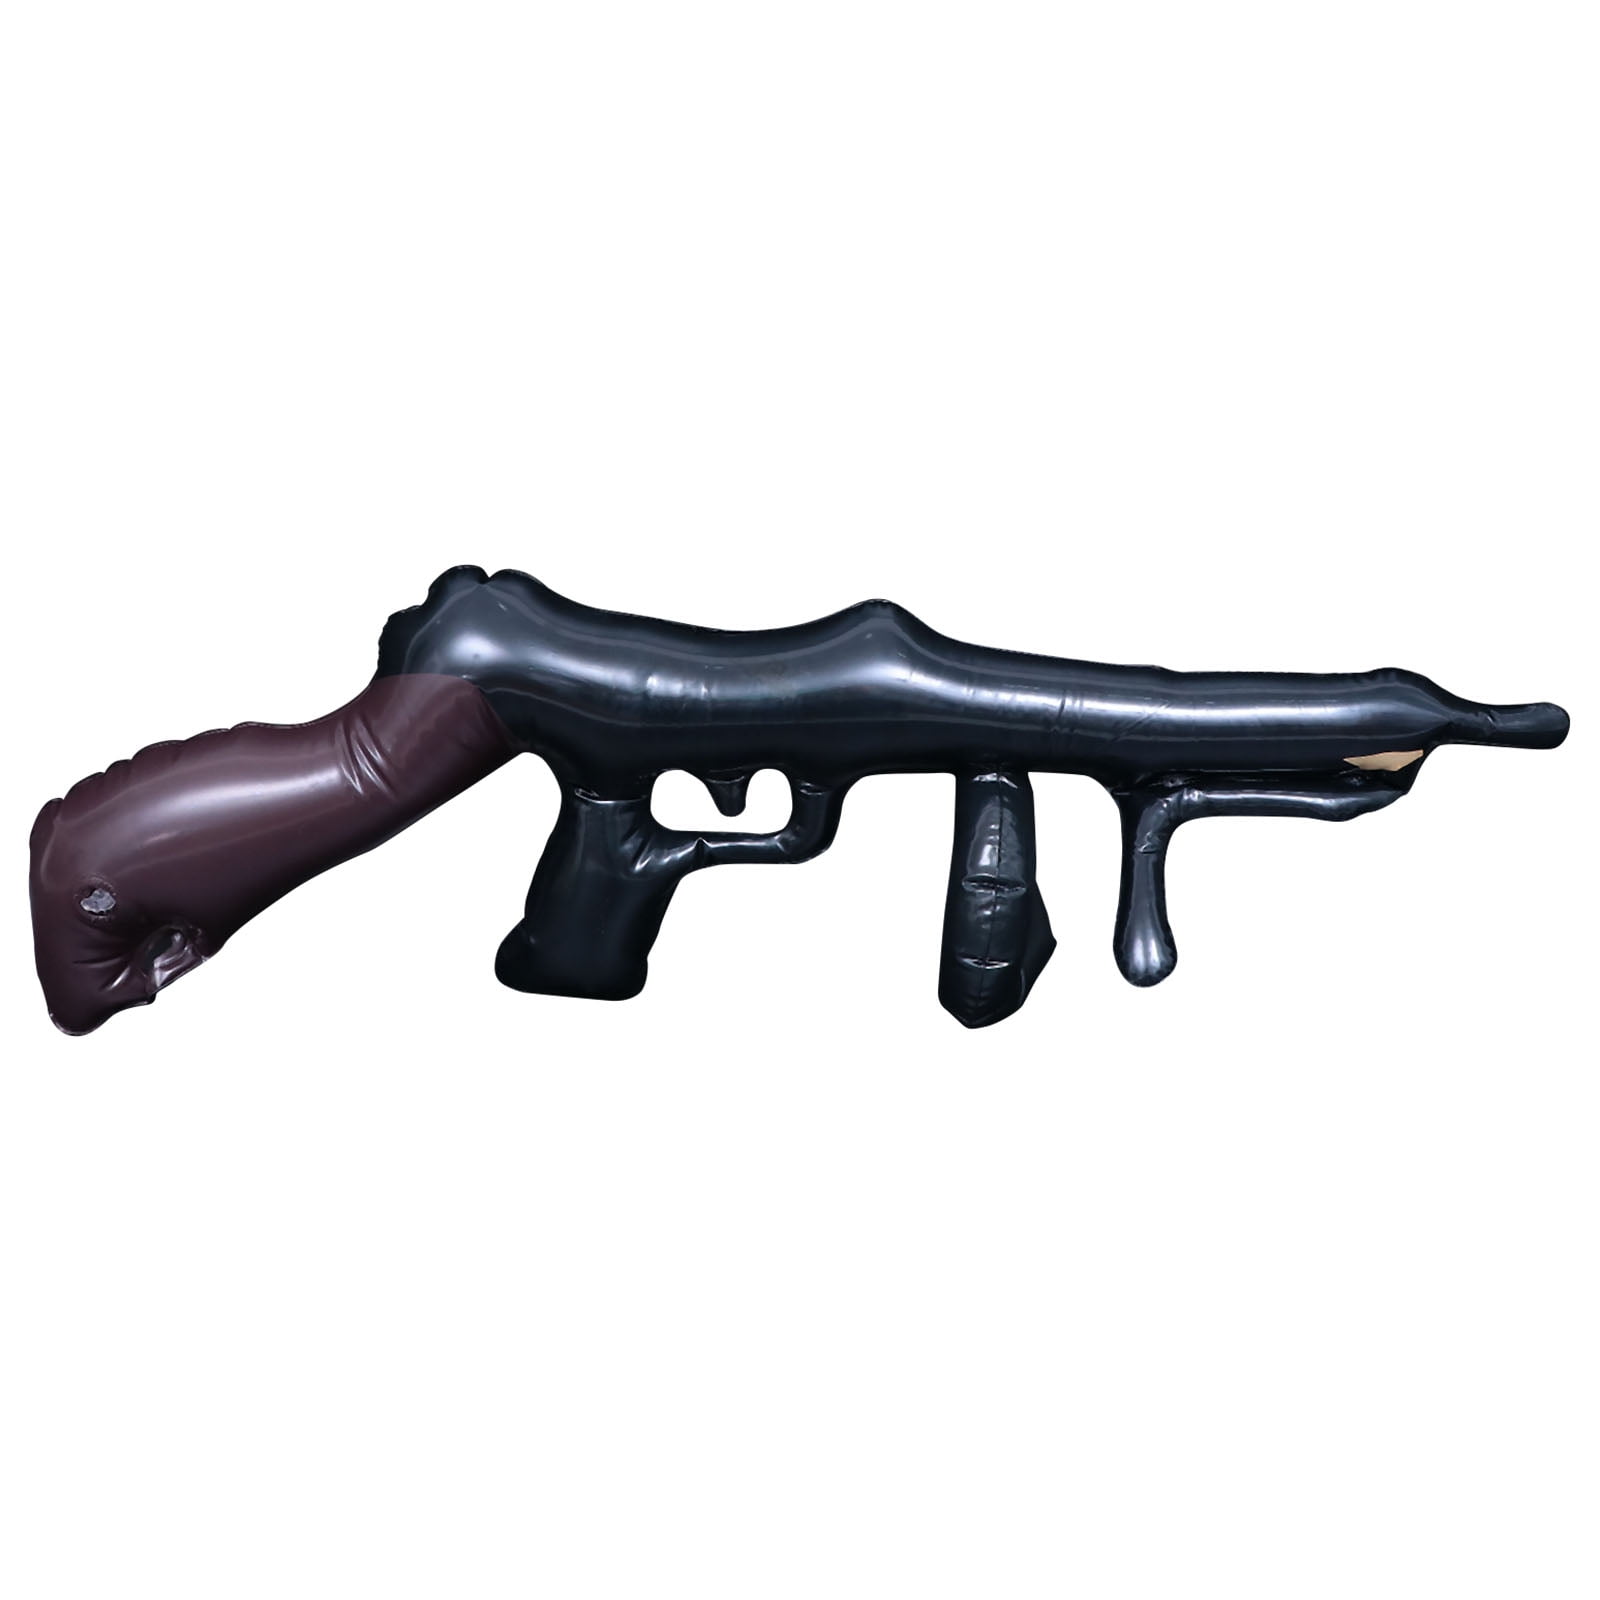 Tommy Gun Toy Plastic 20 Inch Gangster Gun Toy Machine Gun 